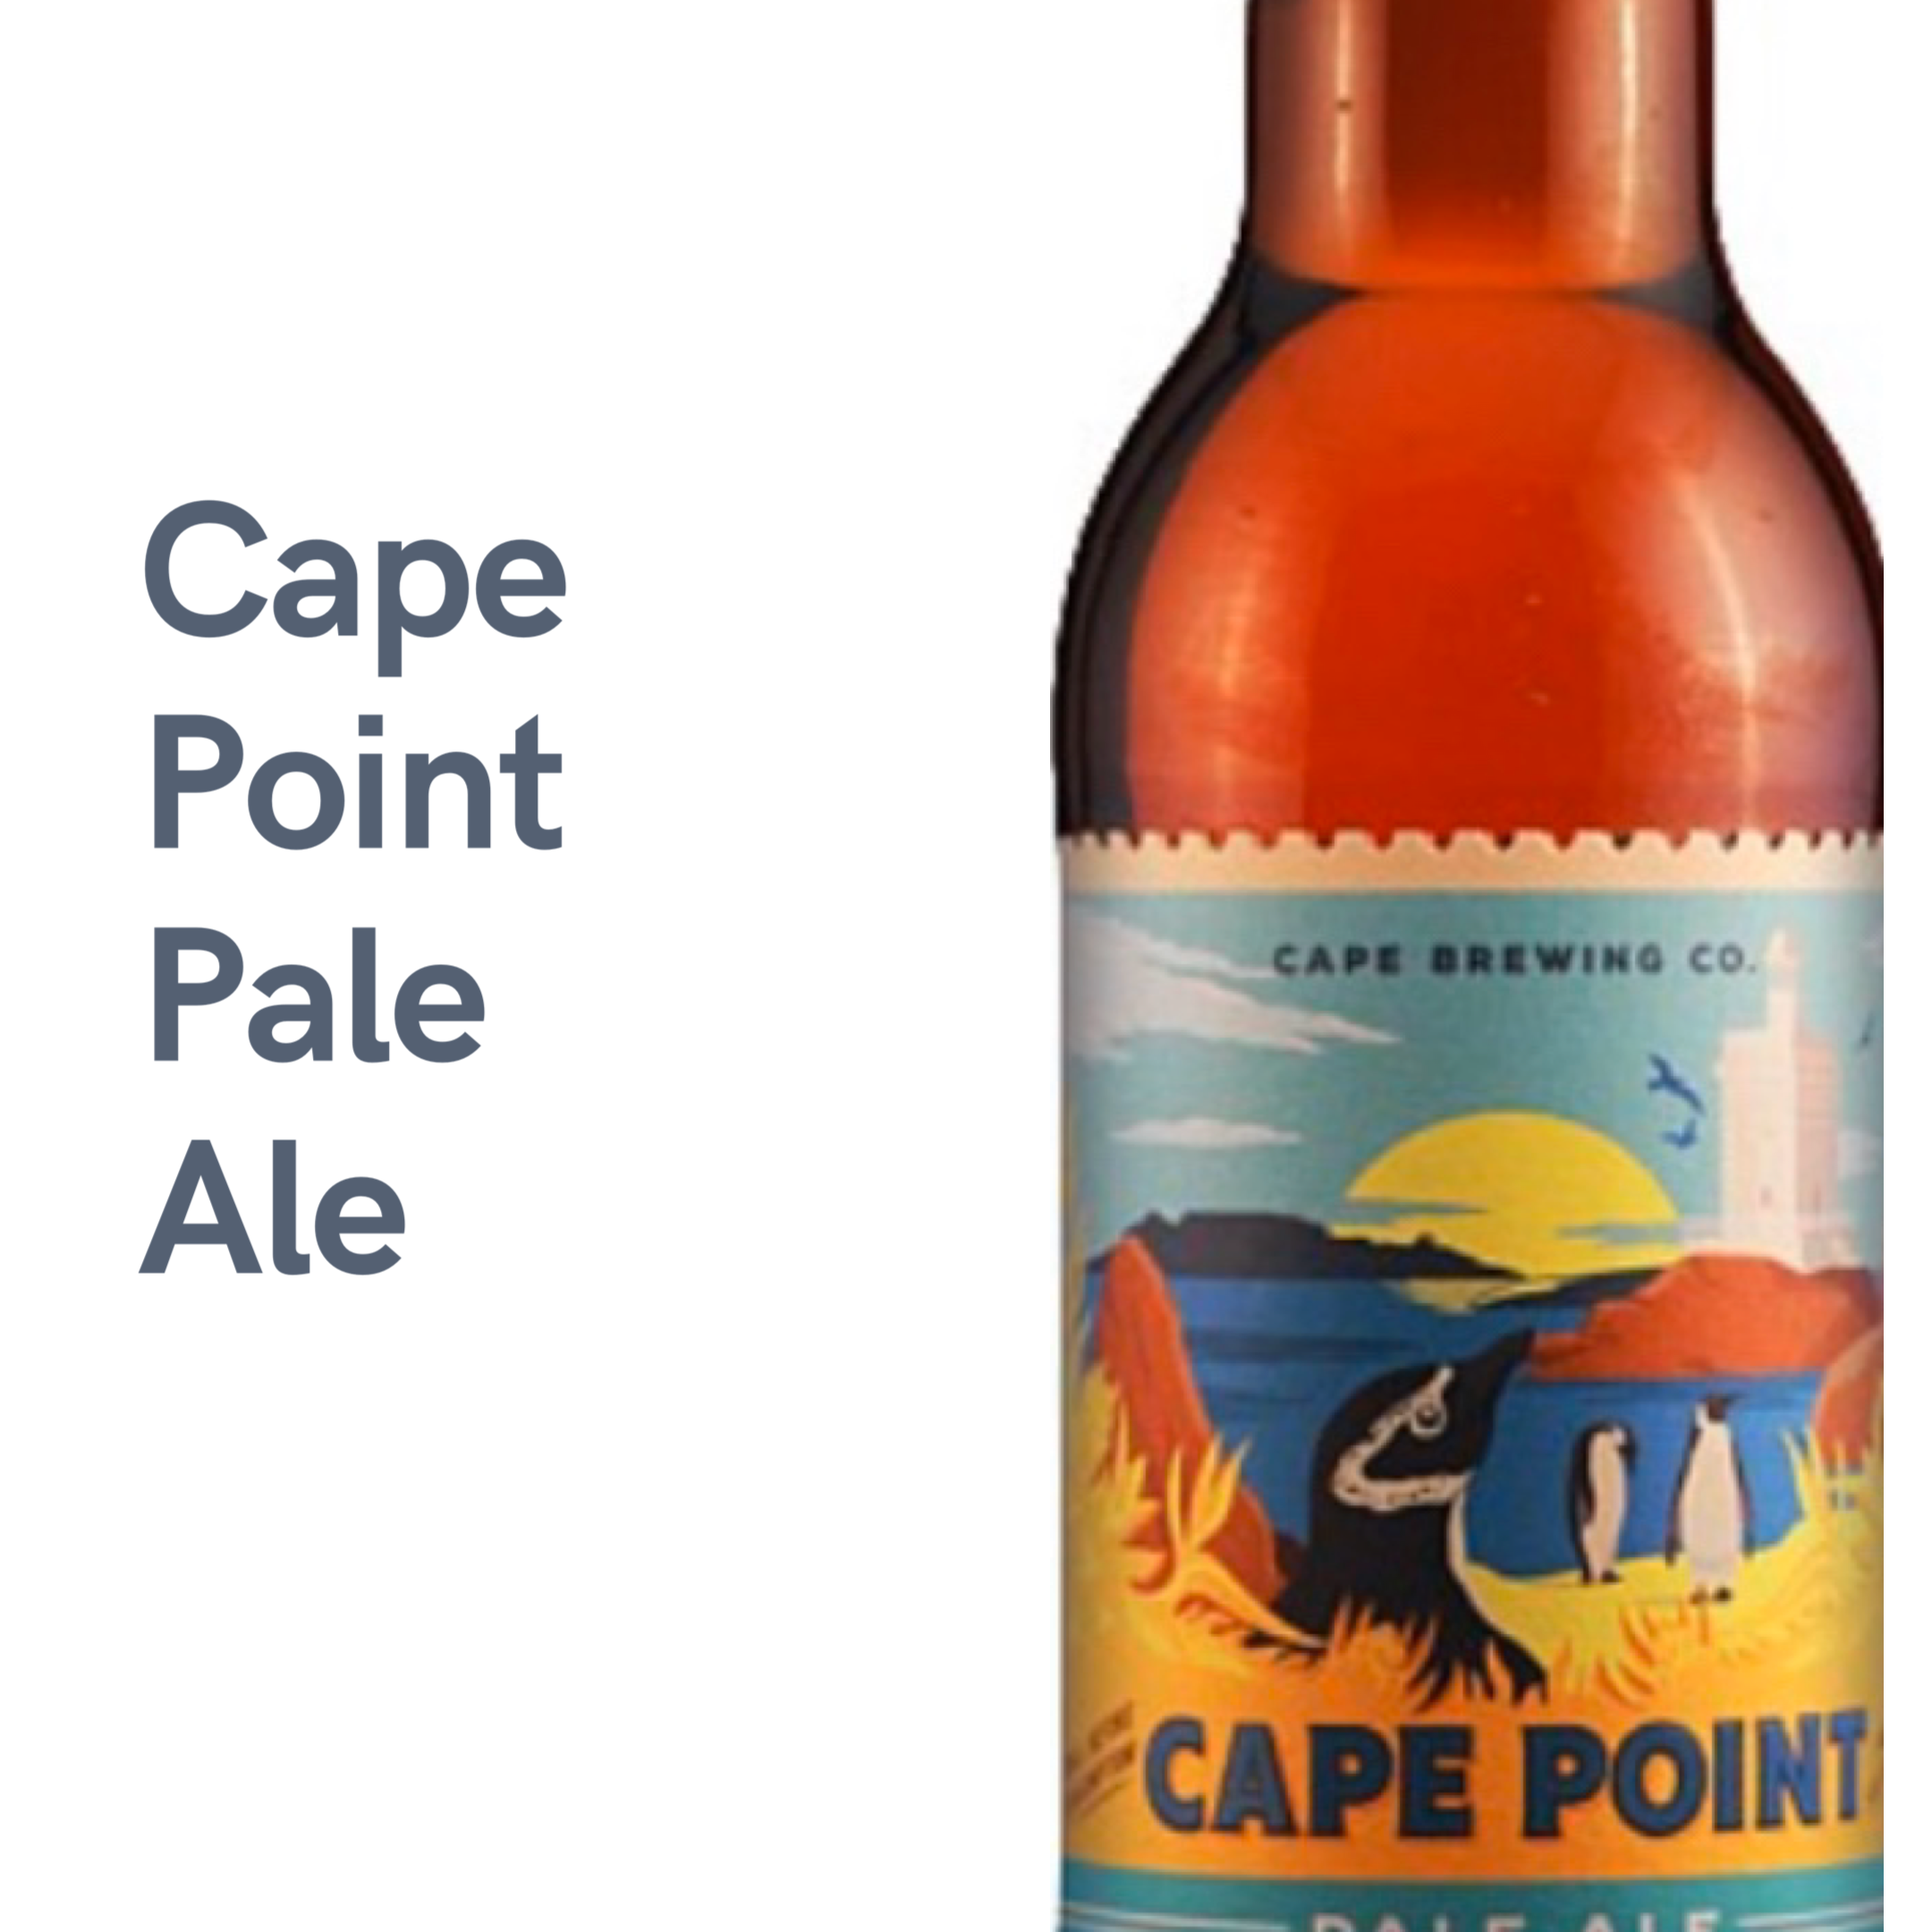 Cape Point Pale Ale (12 bottles) | The Wine Cellar